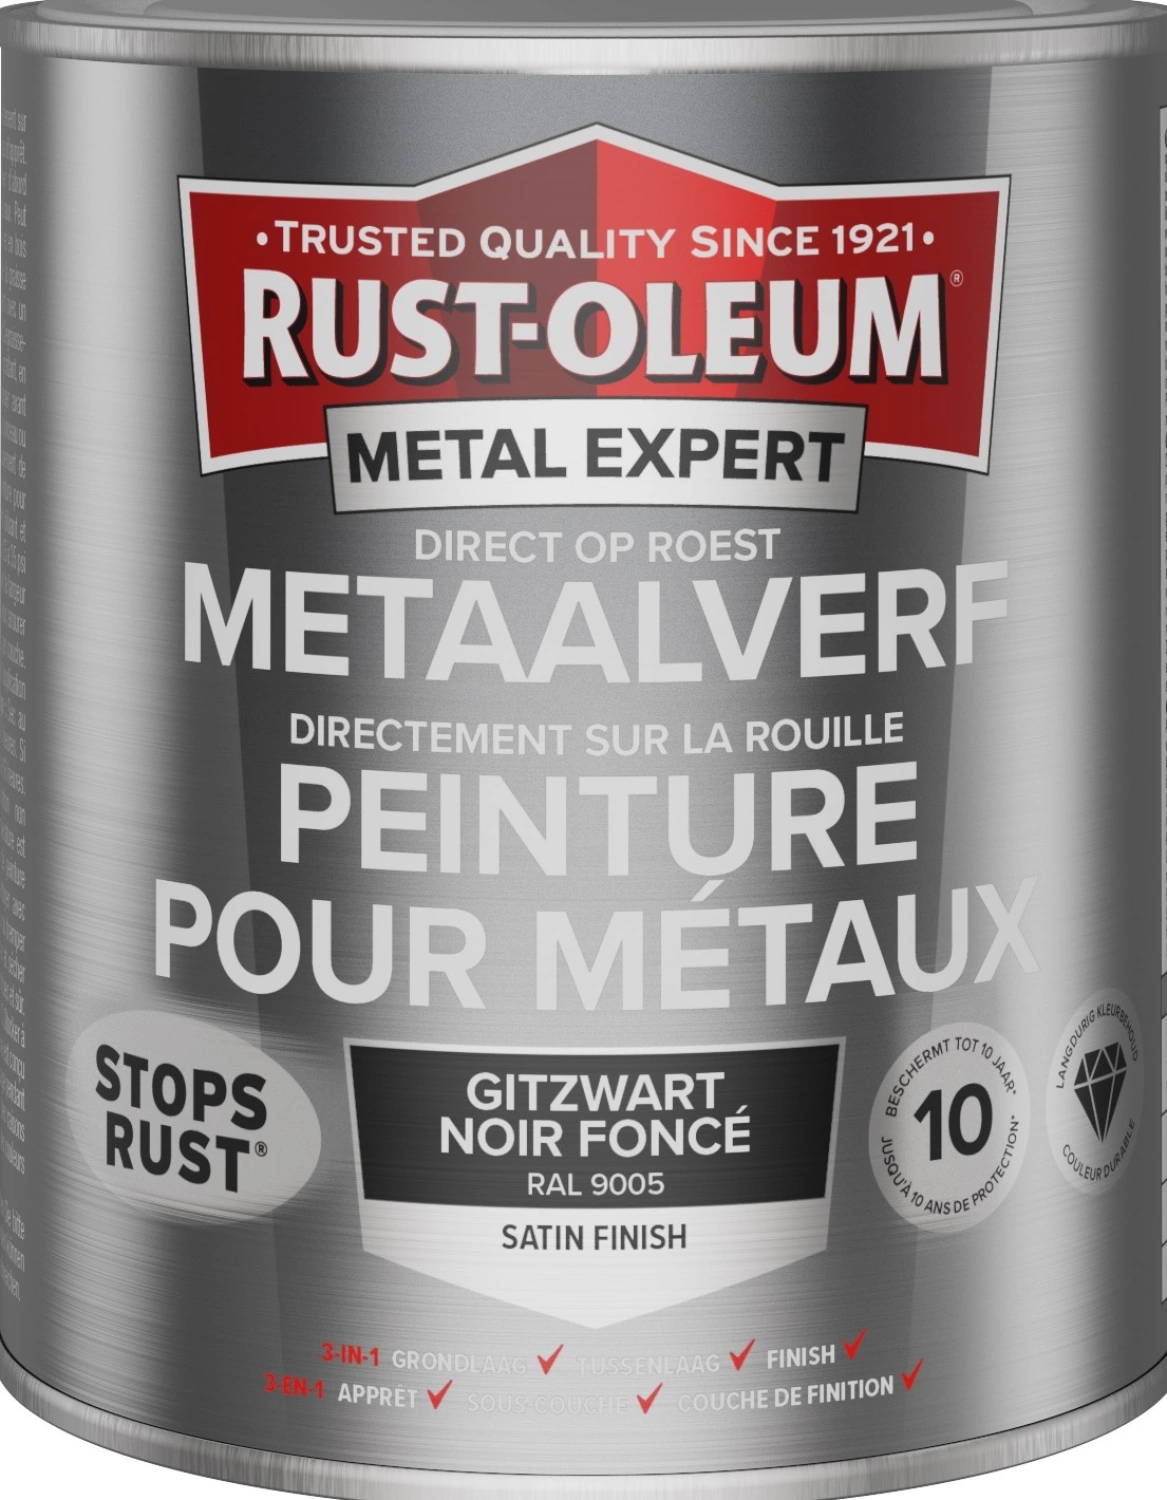 Rust-Oleum MetalExpert Zijdeglans - RAL 9005 gitzwart - 0,25L-image